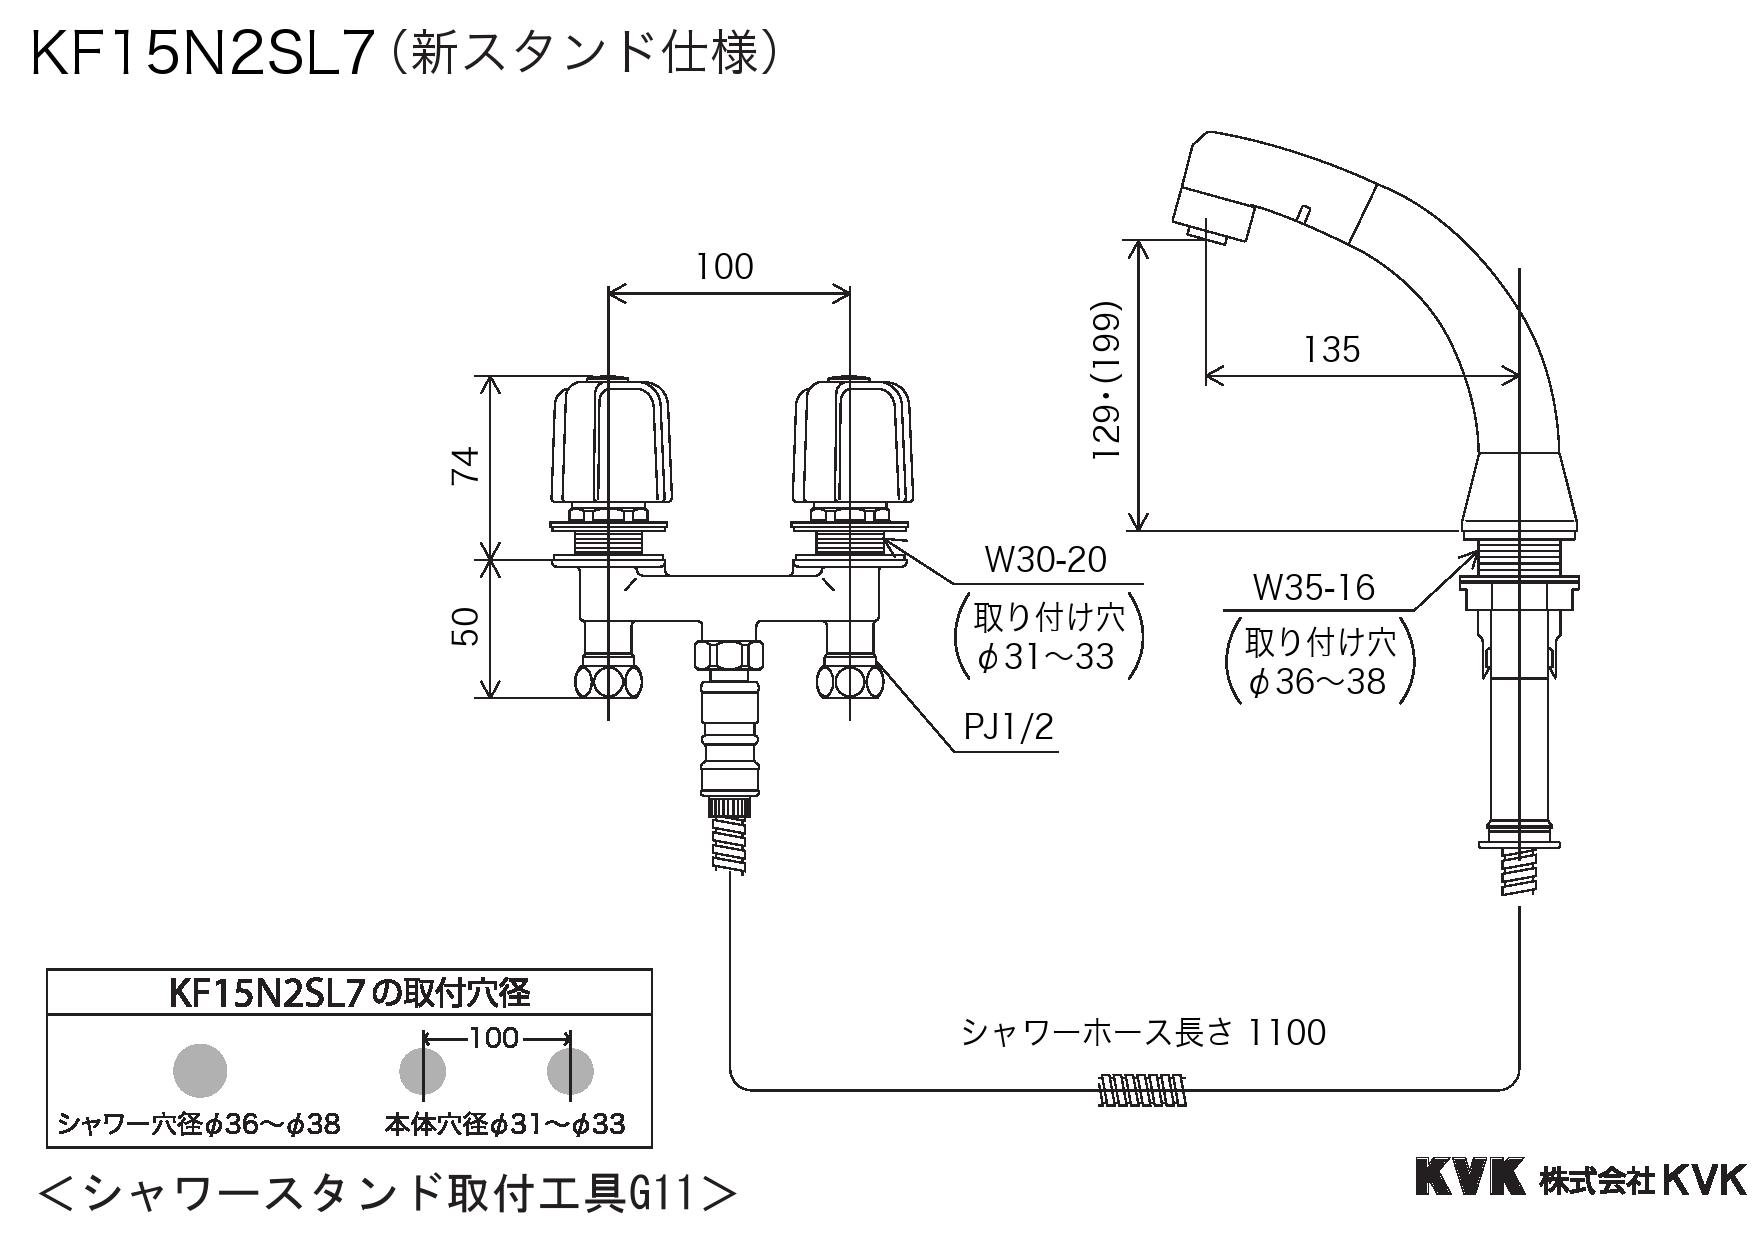 KVK シャワーホース Z420805 - 3